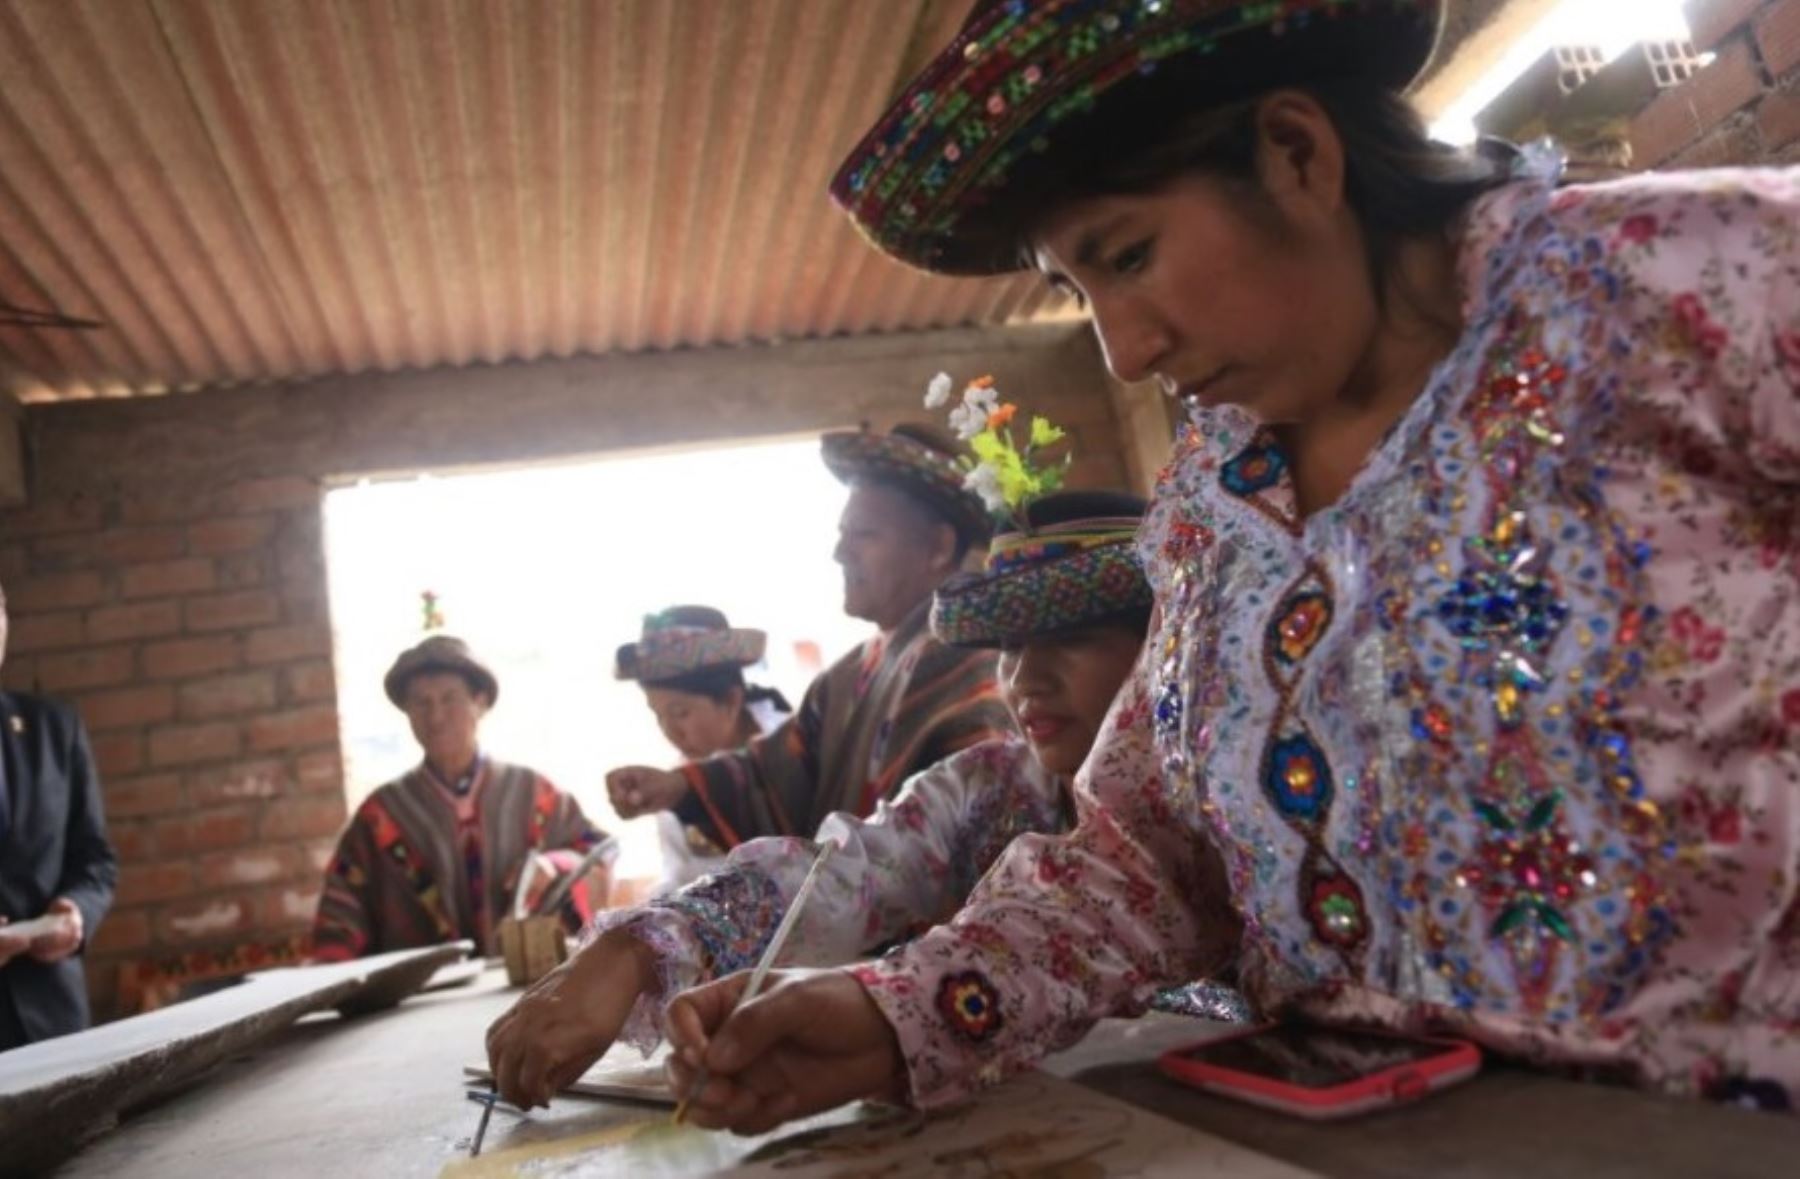 Entre las 130 expresiones artísticas regionales que se exponen en Ruraq Maki: Hecho a mano, la feria artesanal más importante del Perú, destaca las Tablas de Sarhua, que expresa el modo de vida y cultura del distrito de Sarhua, ubicado en la provincia ayacuchana de Víctor Fajardo.